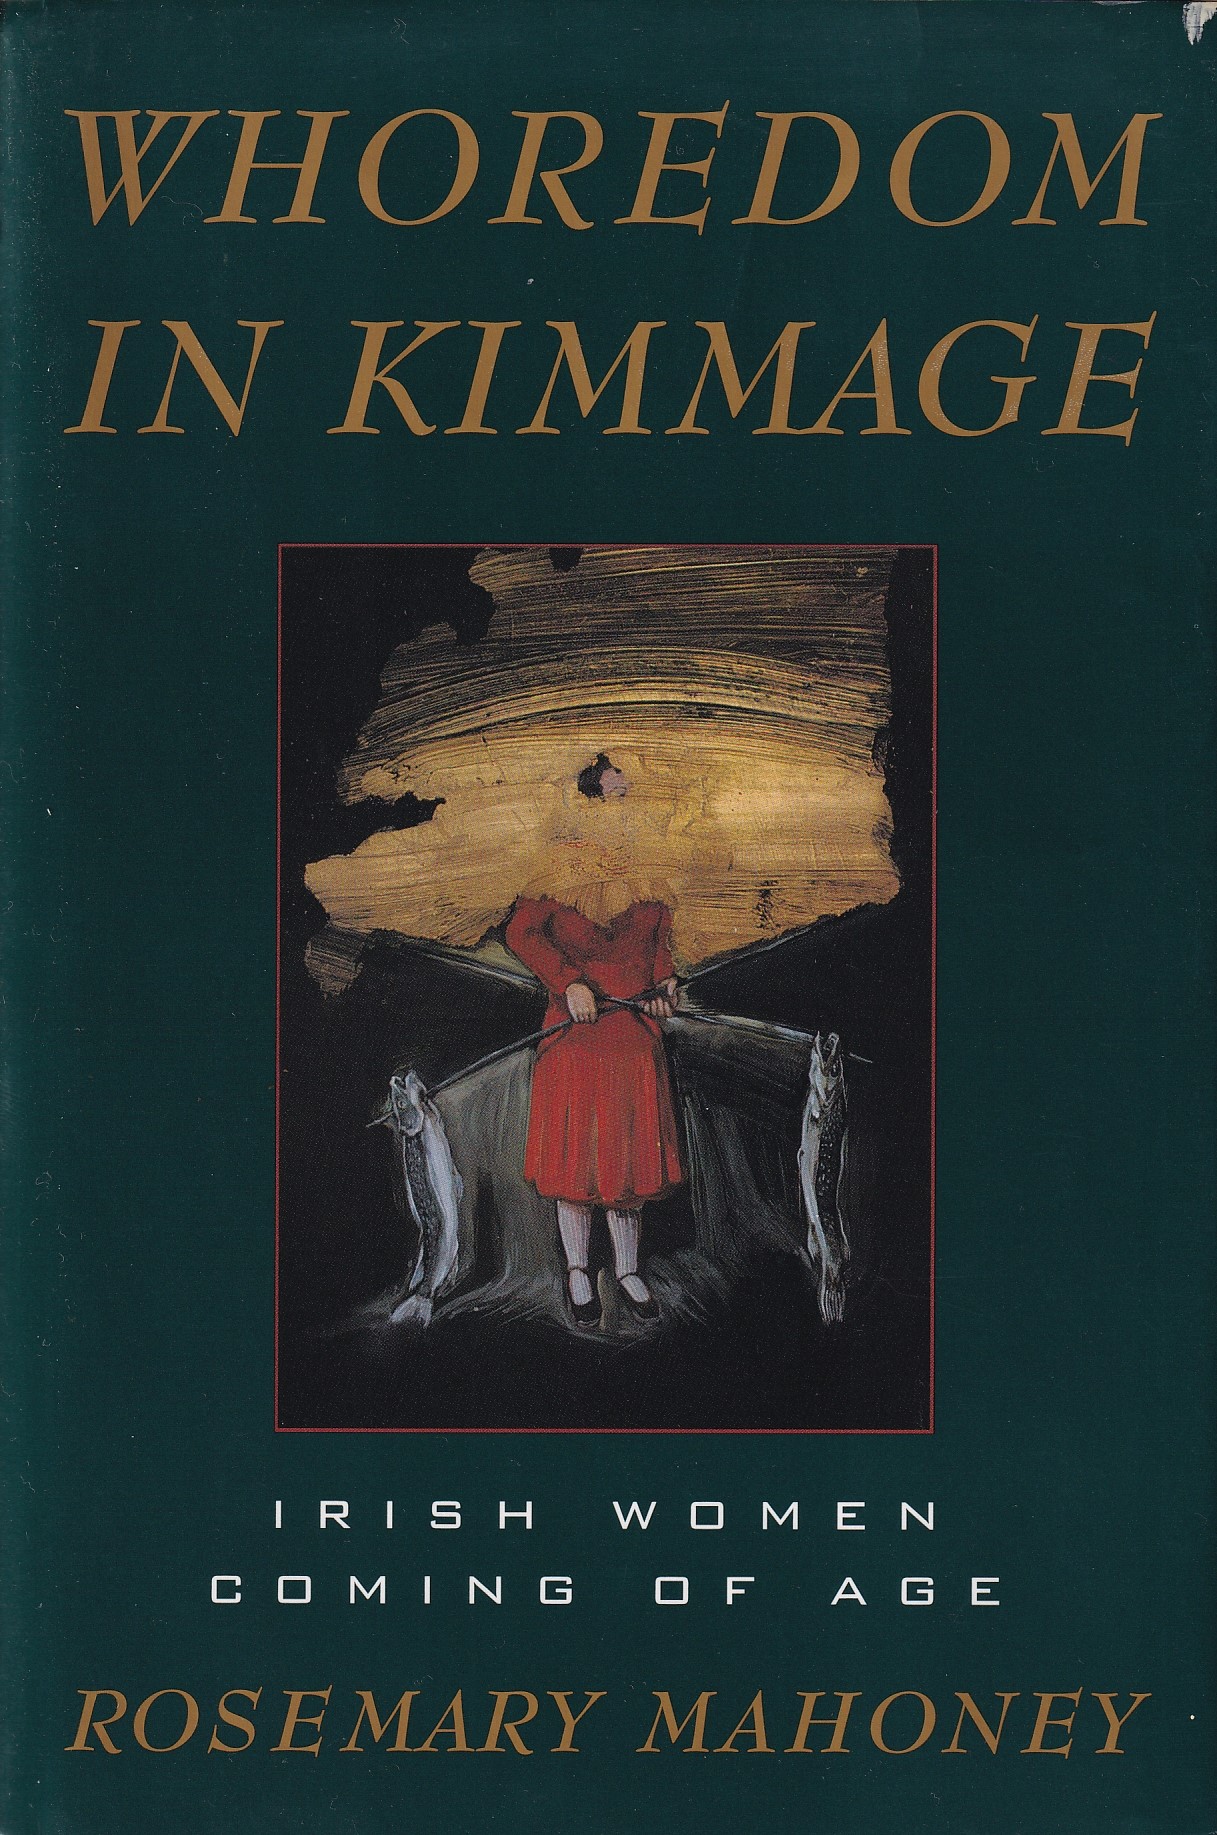 Whoredom in Kimmage: Irish Women Coming of Age | Rosemary Mahoney | Charlie Byrne's